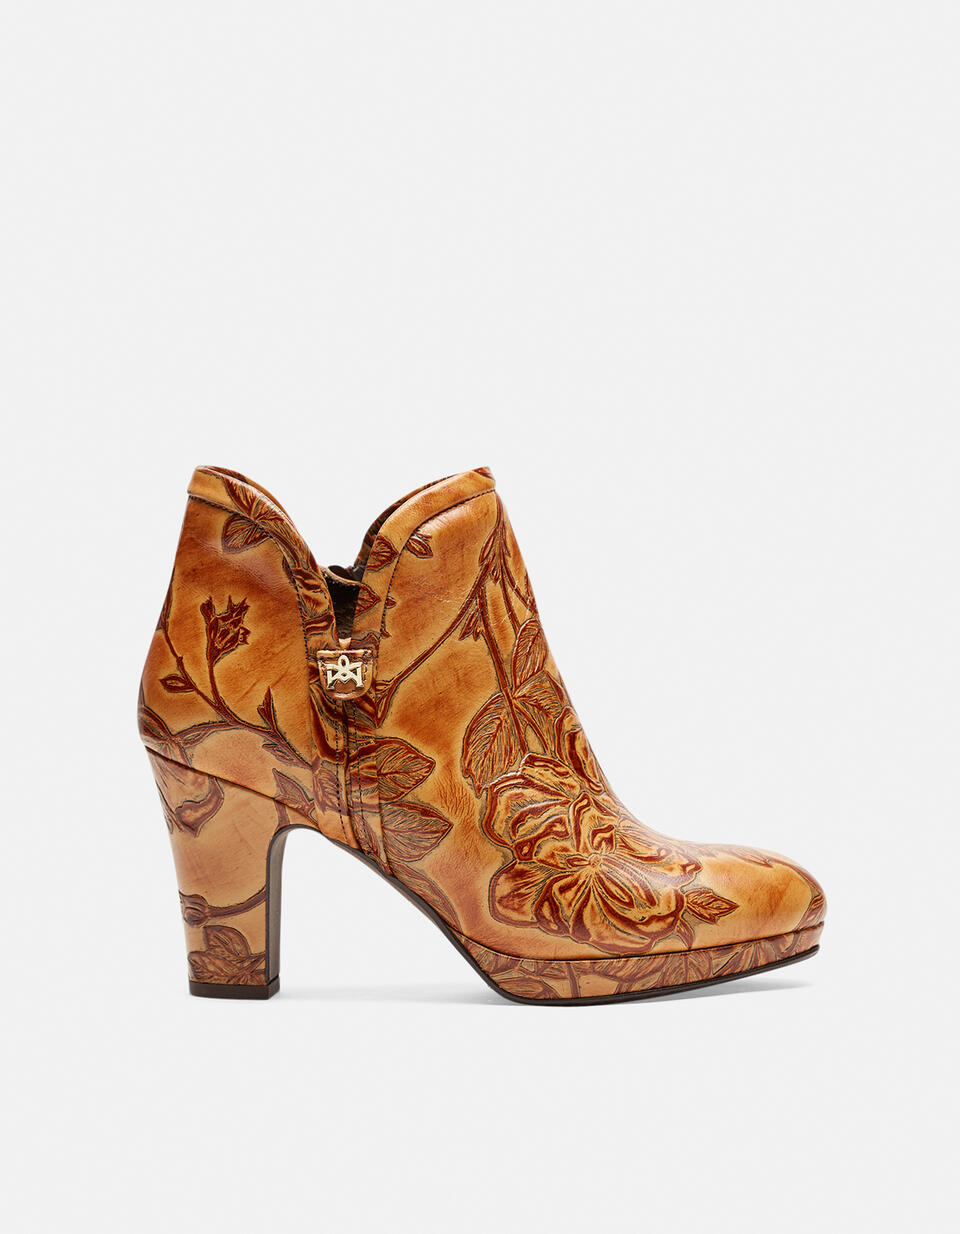 Mimi ankle boots - Women Shoes | Shoes  - Women Shoes | ShoesCuoieria Fiorentina